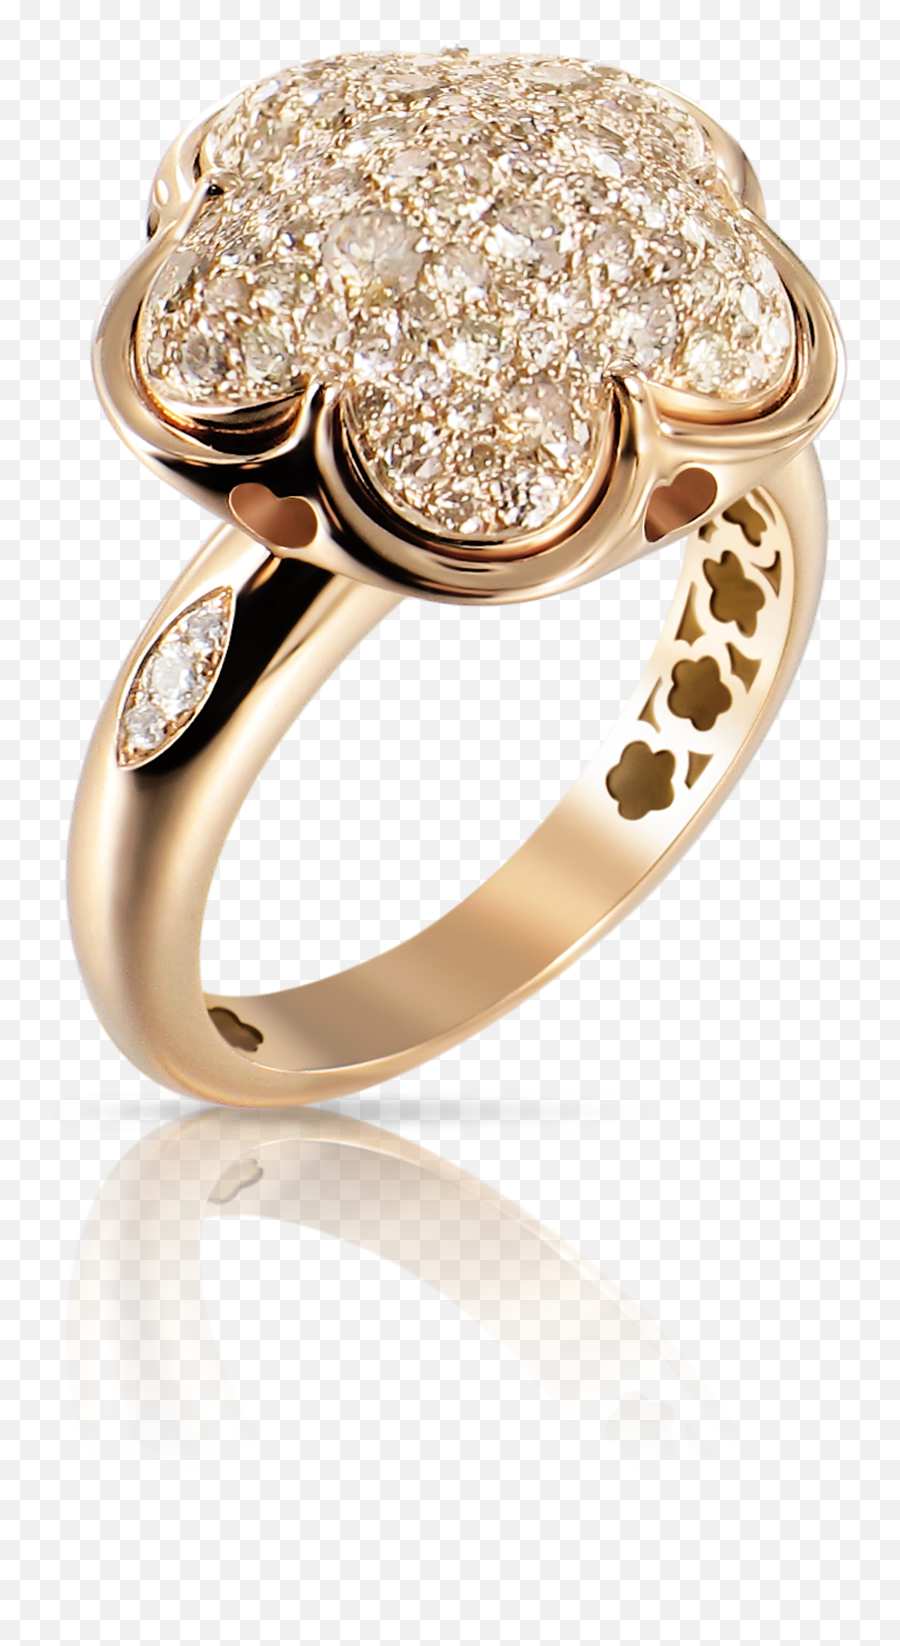 Bon Ton Ring - Wedding Ring Png,Elegant 